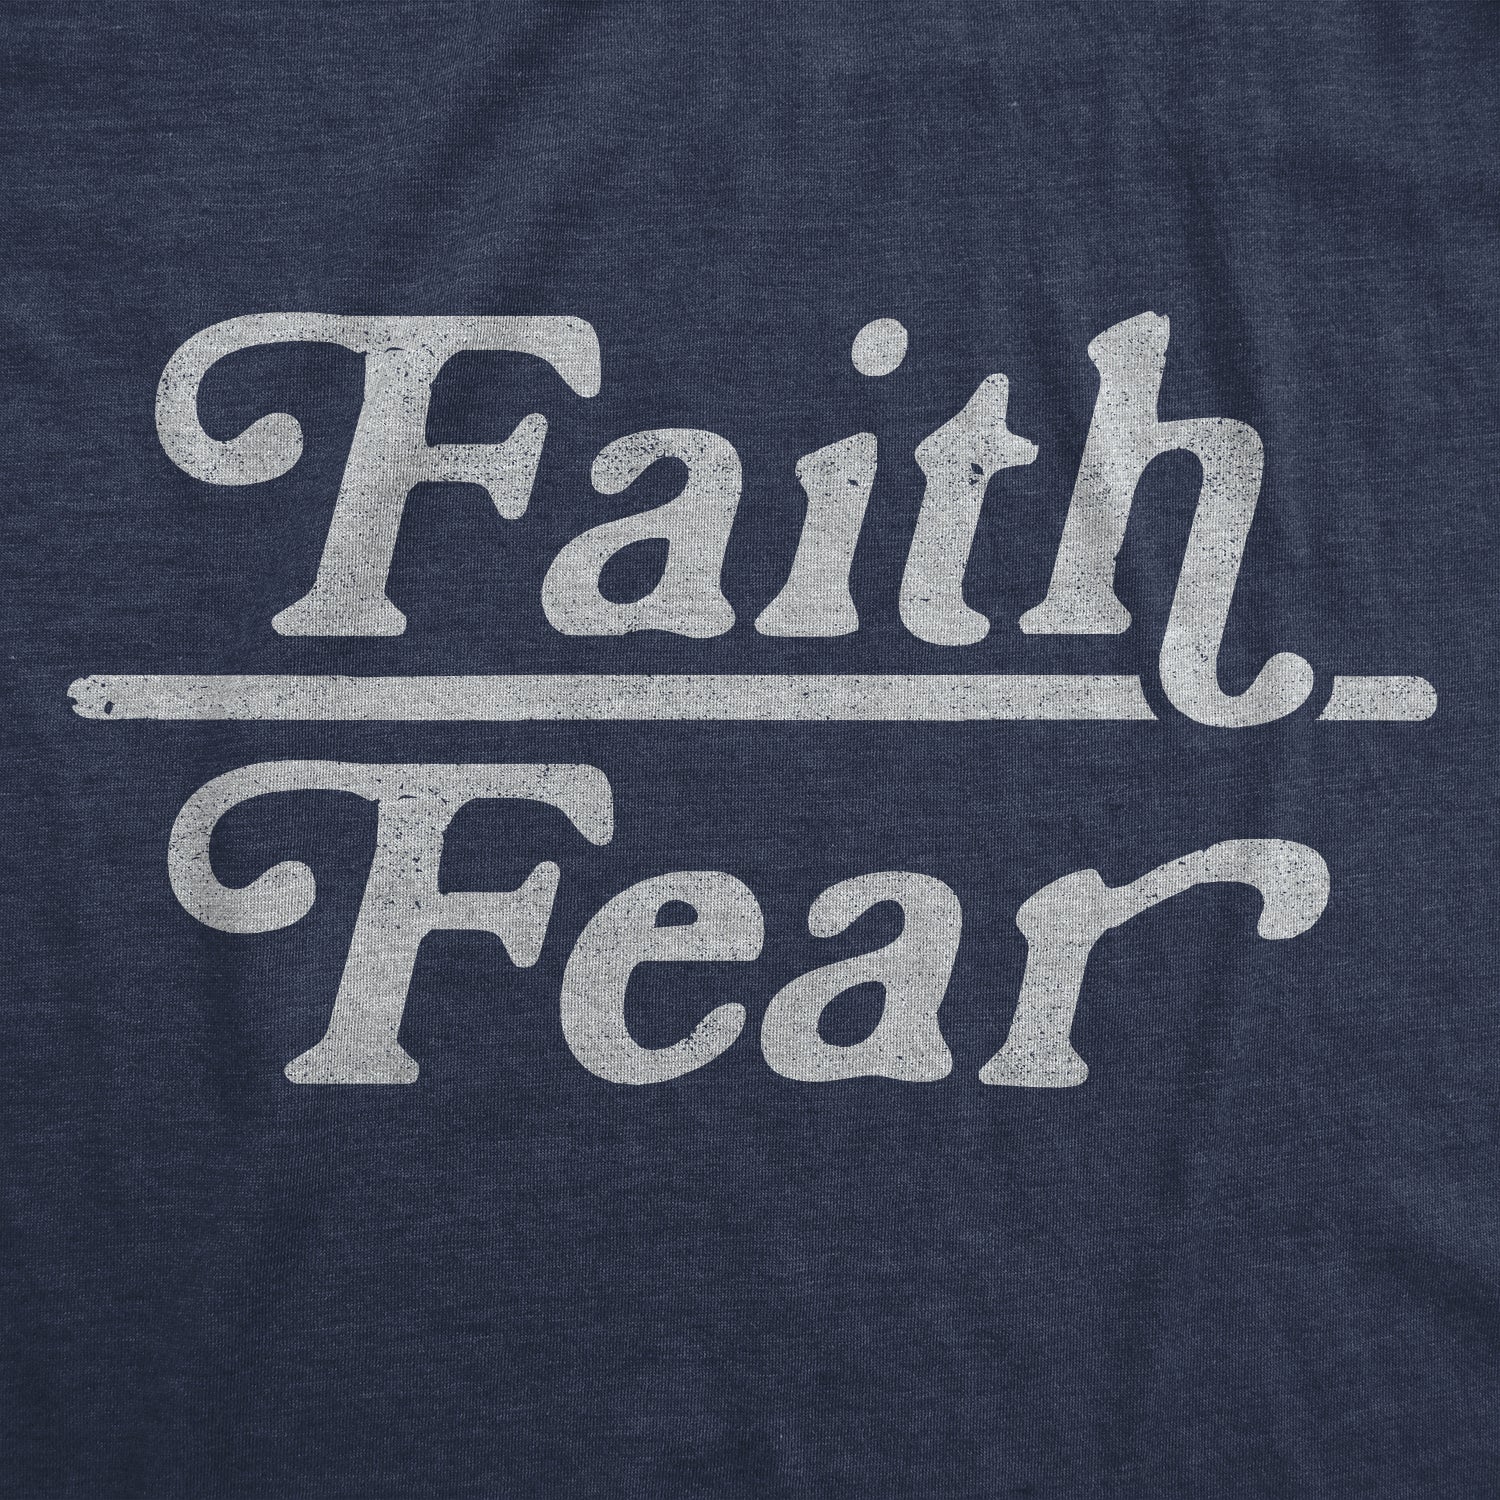 Funny Heather Navy - Faith Over Fear Faith Over Fear Womens T Shirt Nerdy Motivational Religion Tee